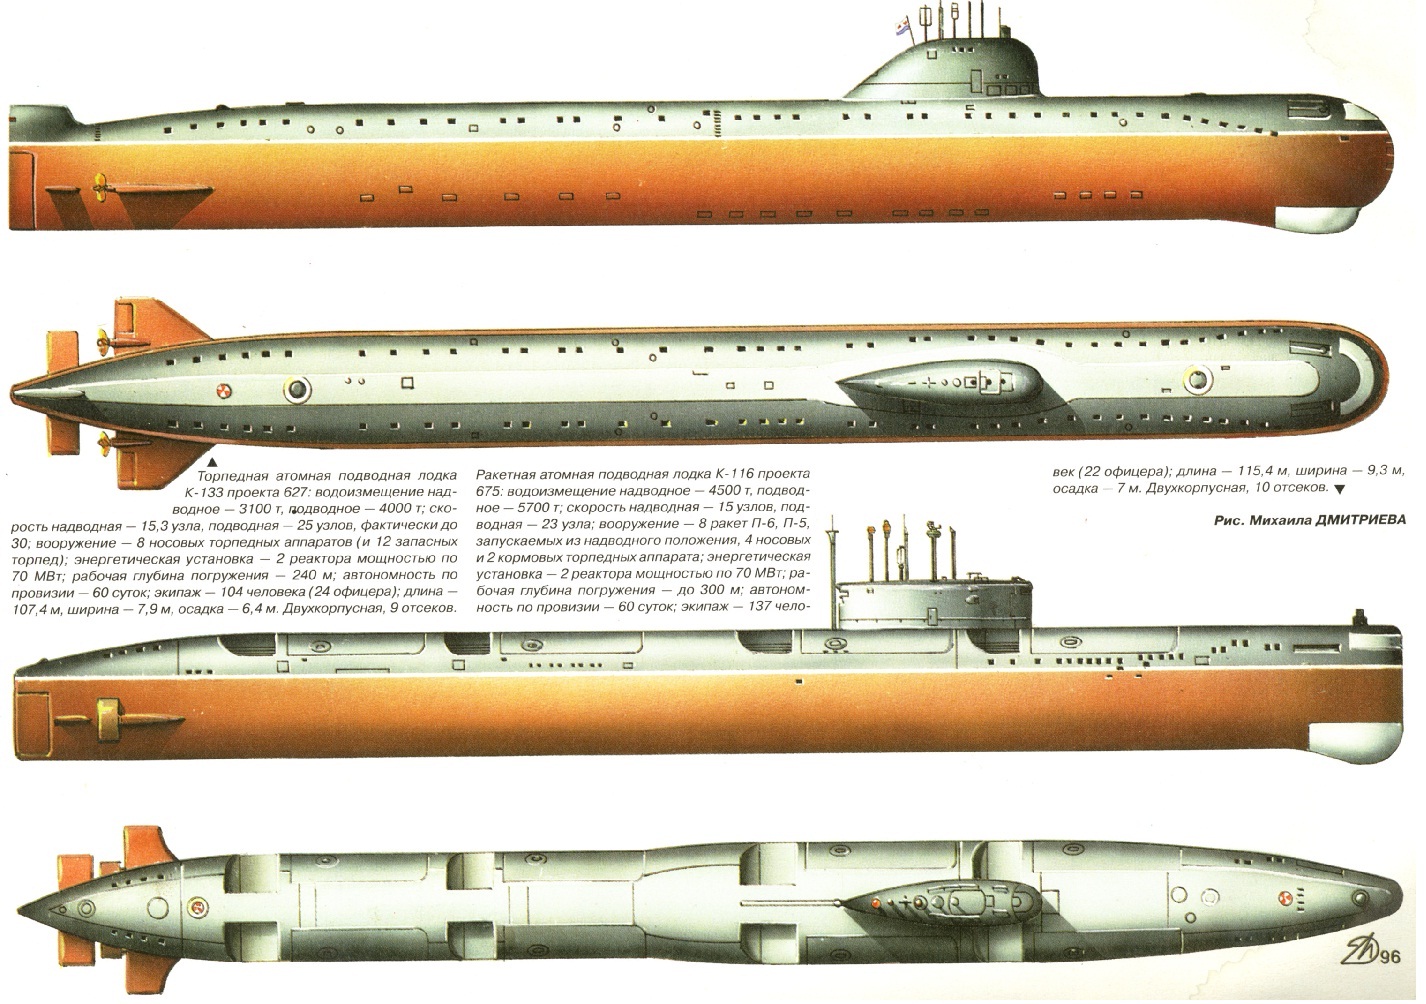 Великая страна СССР,АПЛ К-133 проект 627 и АПЛ К-116 проект 675, подводная кругосветка